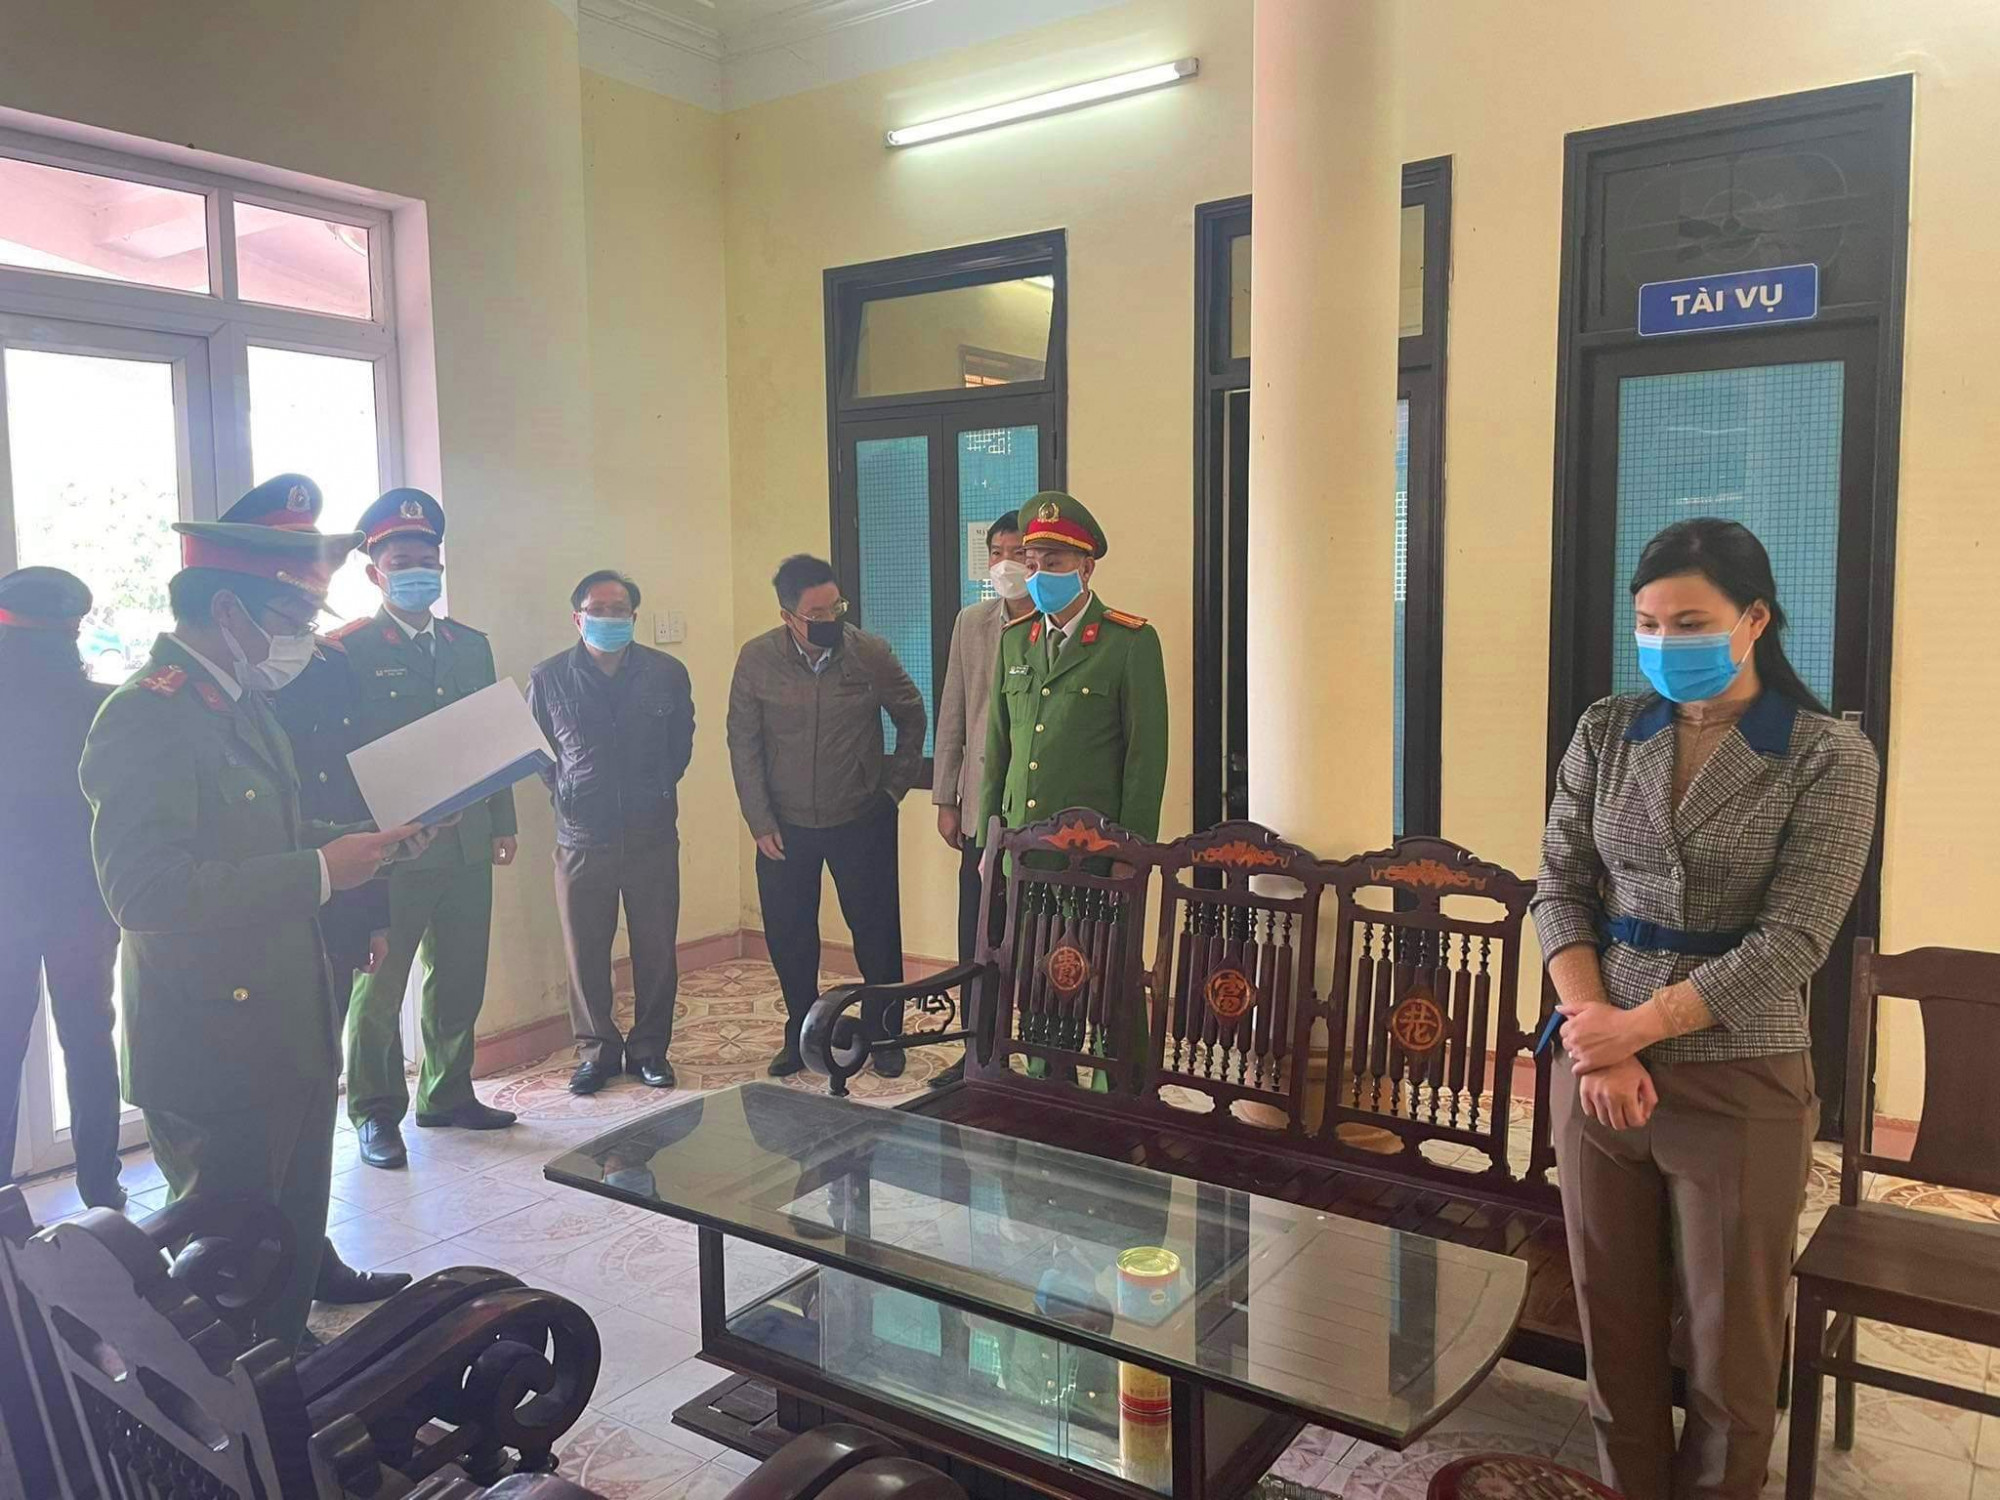 Cơ quan công an quyết định khởi tố vụ án, khởi tố bị can và lệnh tạm giam đối với Nguyễn Thị Thùy Linh 